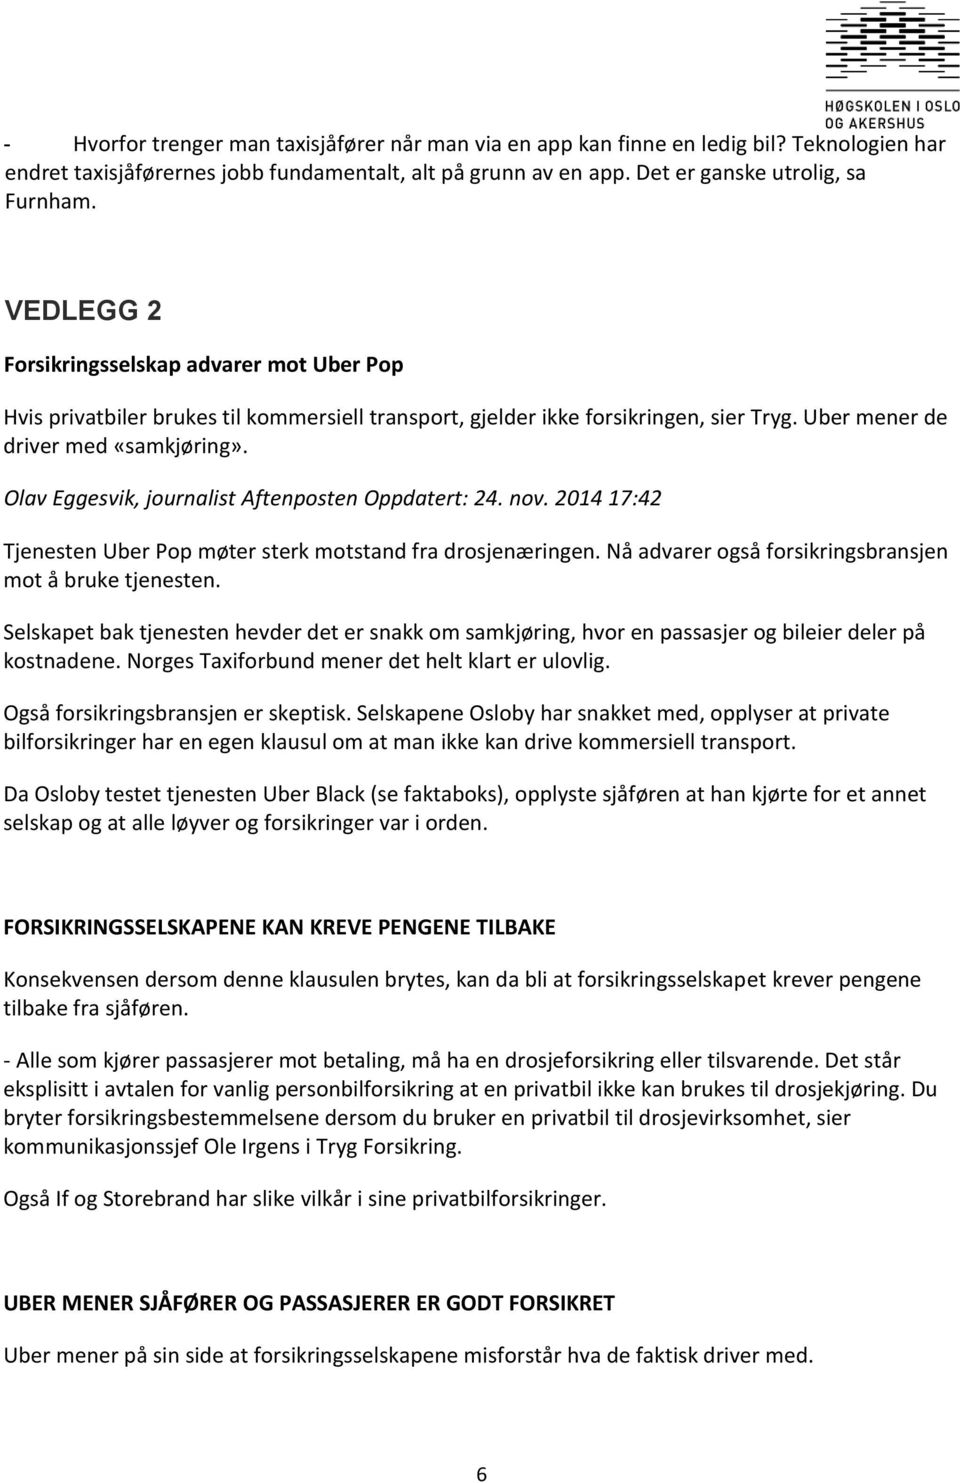 Olav Eggesvik, journalist Aftenposten Oppdatert: 24. nov. 2014 17:42 Tjenesten Uber Pop møter sterk motstand fra drosjenæringen. Nå advarer også forsikringsbransjen mot å bruke tjenesten.